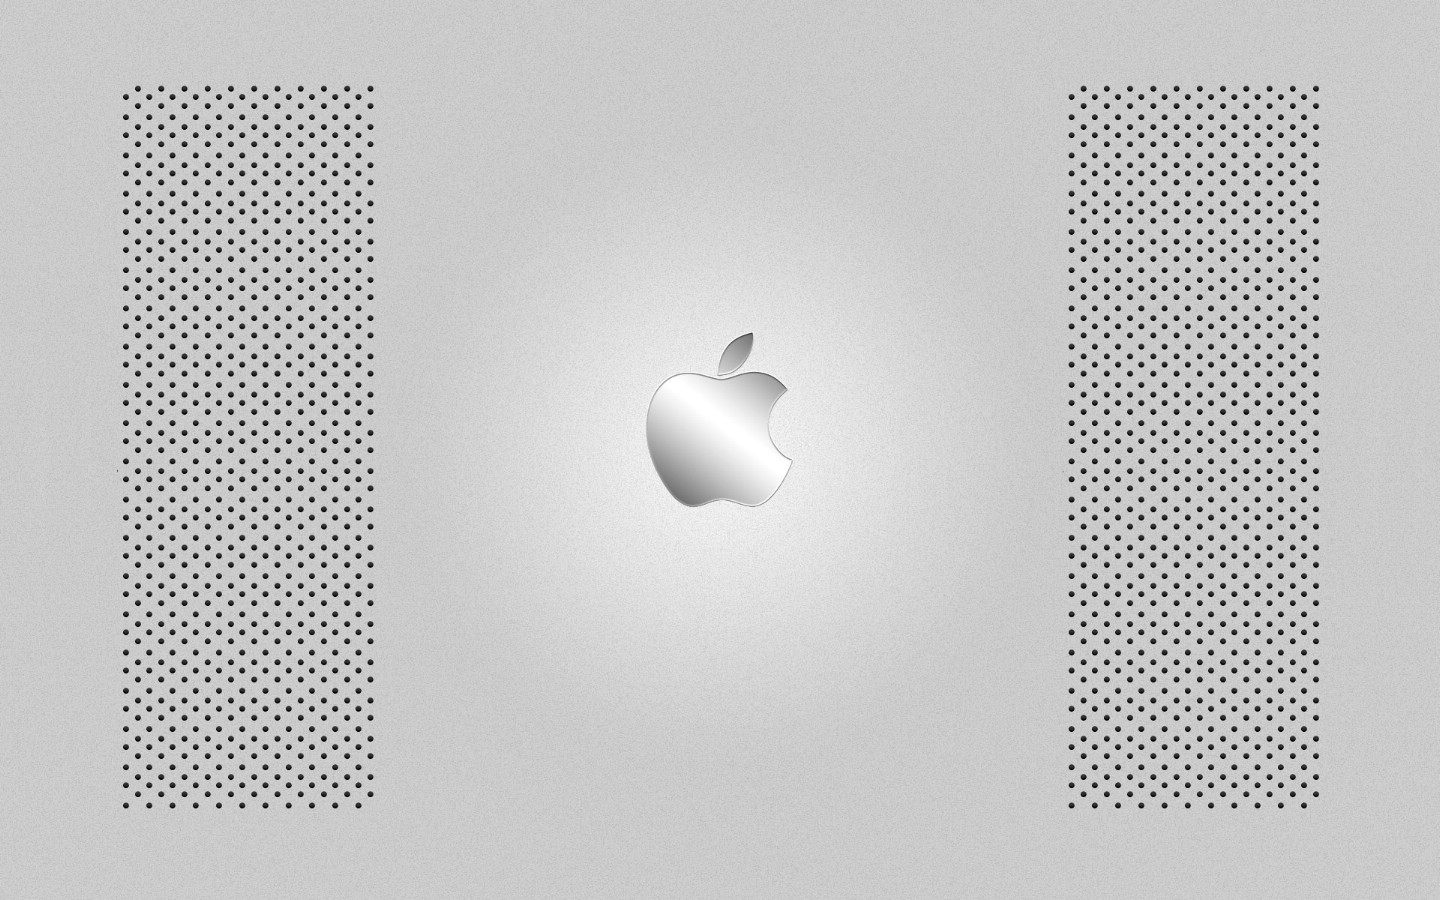 壁纸1440x900Apple主题 35 14壁纸 Apple主题壁纸 Apple主题图片 Apple主题素材 系统壁纸 系统图库 系统图片素材桌面壁纸